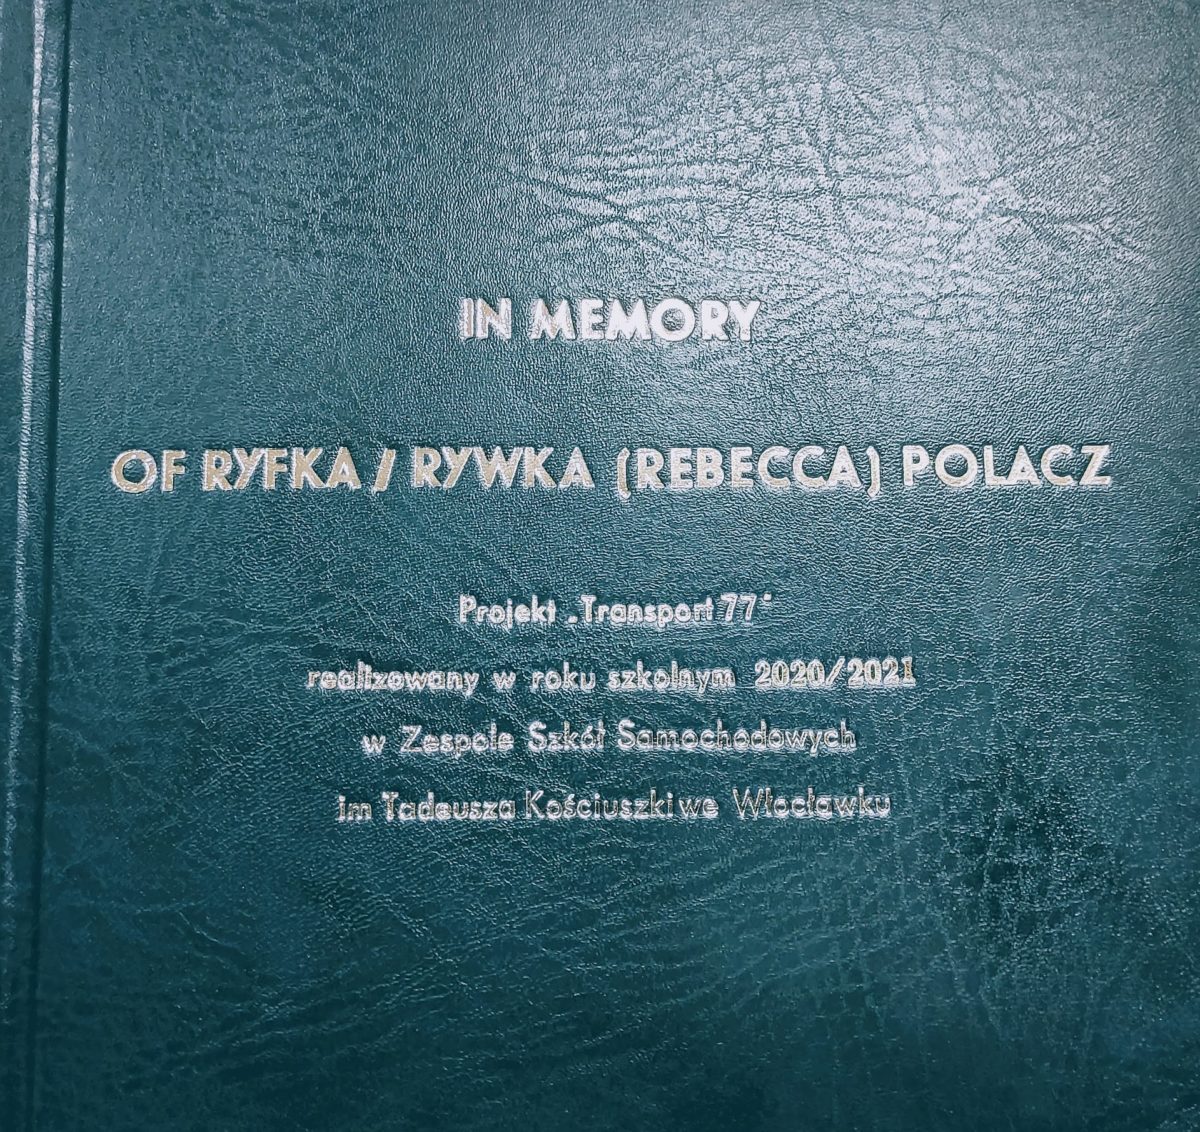 In memory of Ryfka/Rywka (Rebecca) Polacz